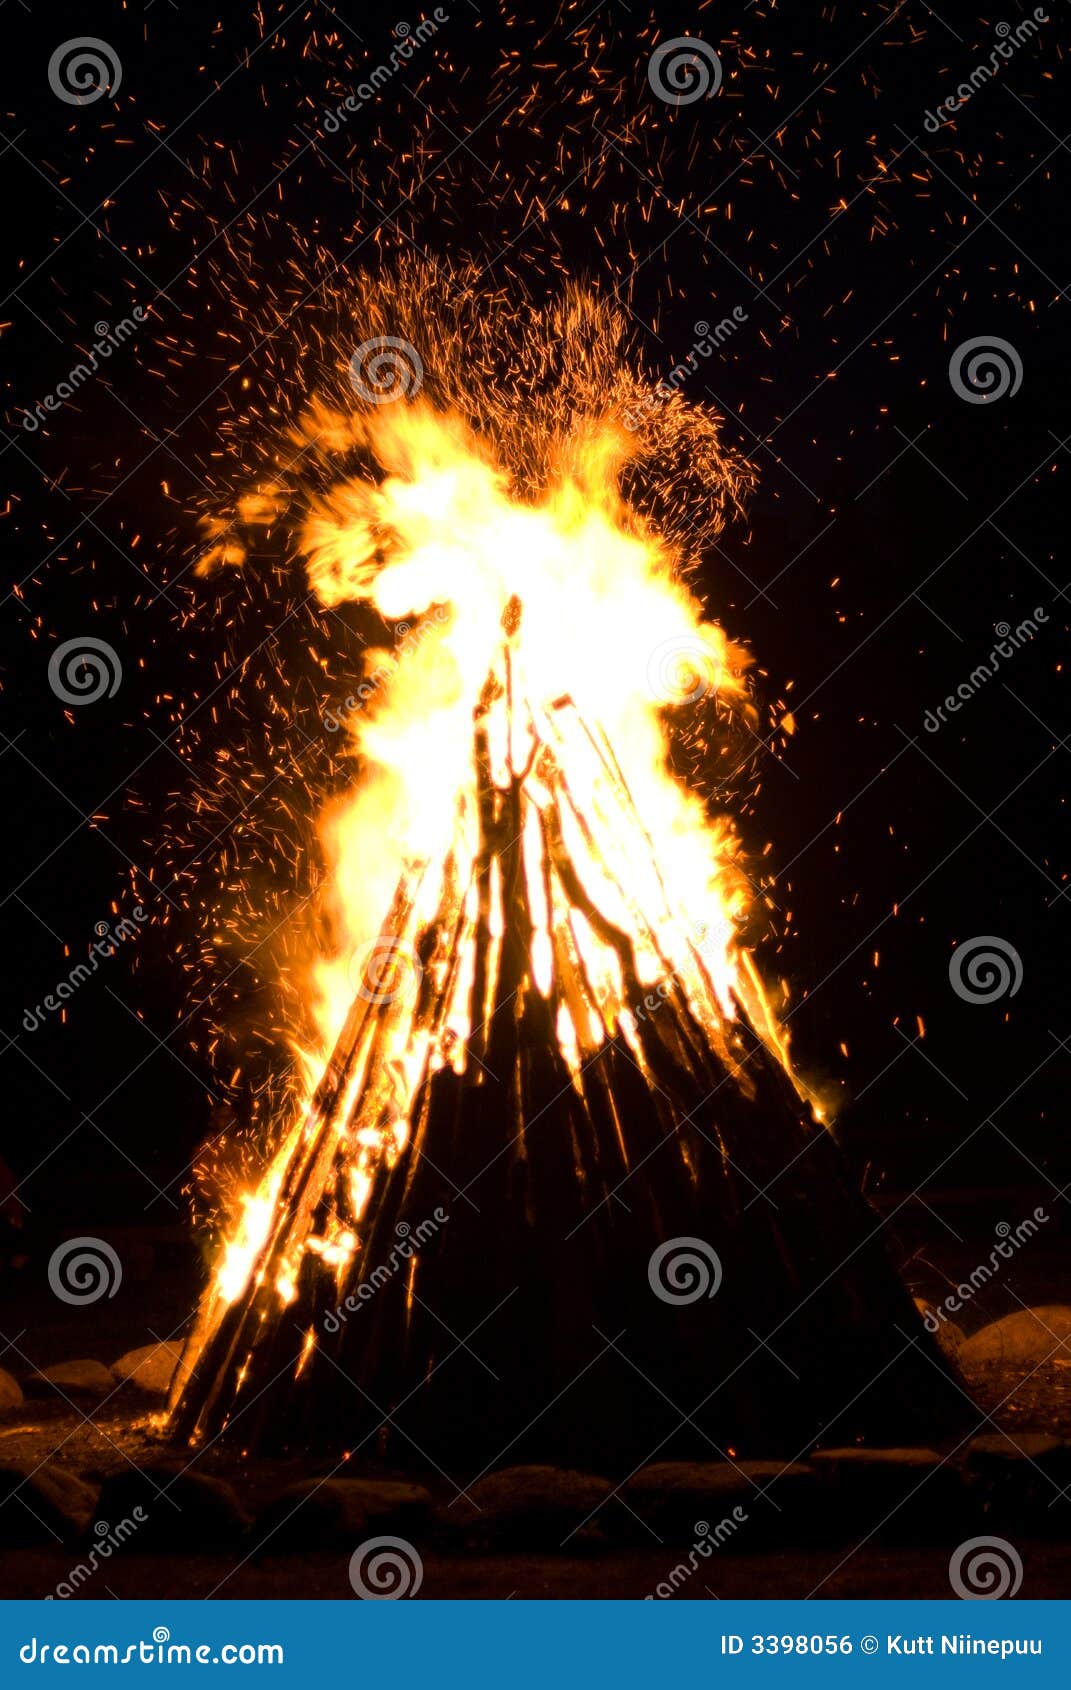 huge outdoor bonfire